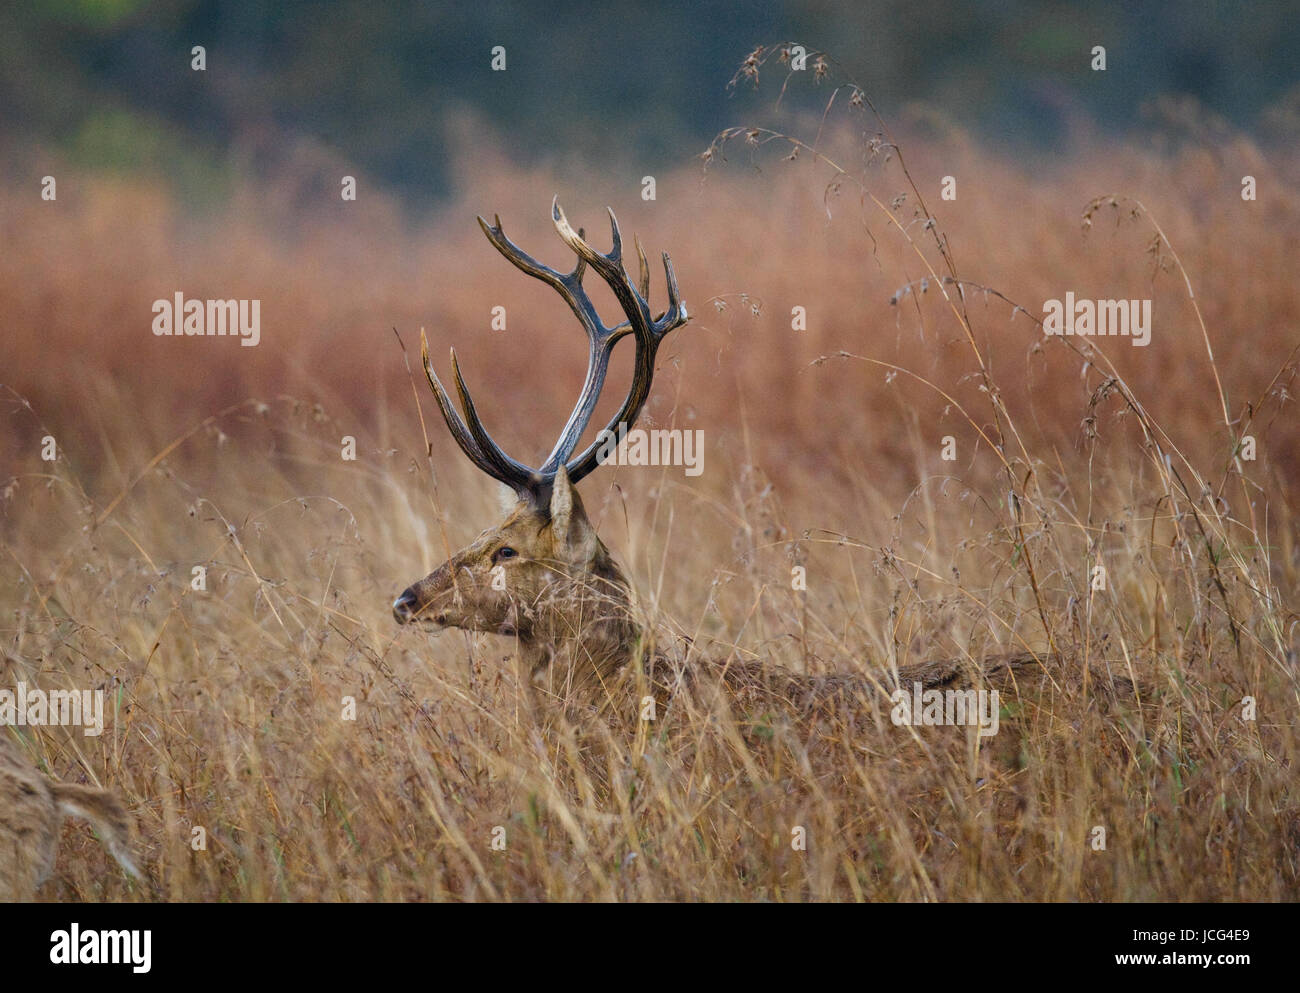 Hirsche mit schönen Hörnern, die in der Wildnis im Gras stehen. Indien. Nationalpark. Stockfoto